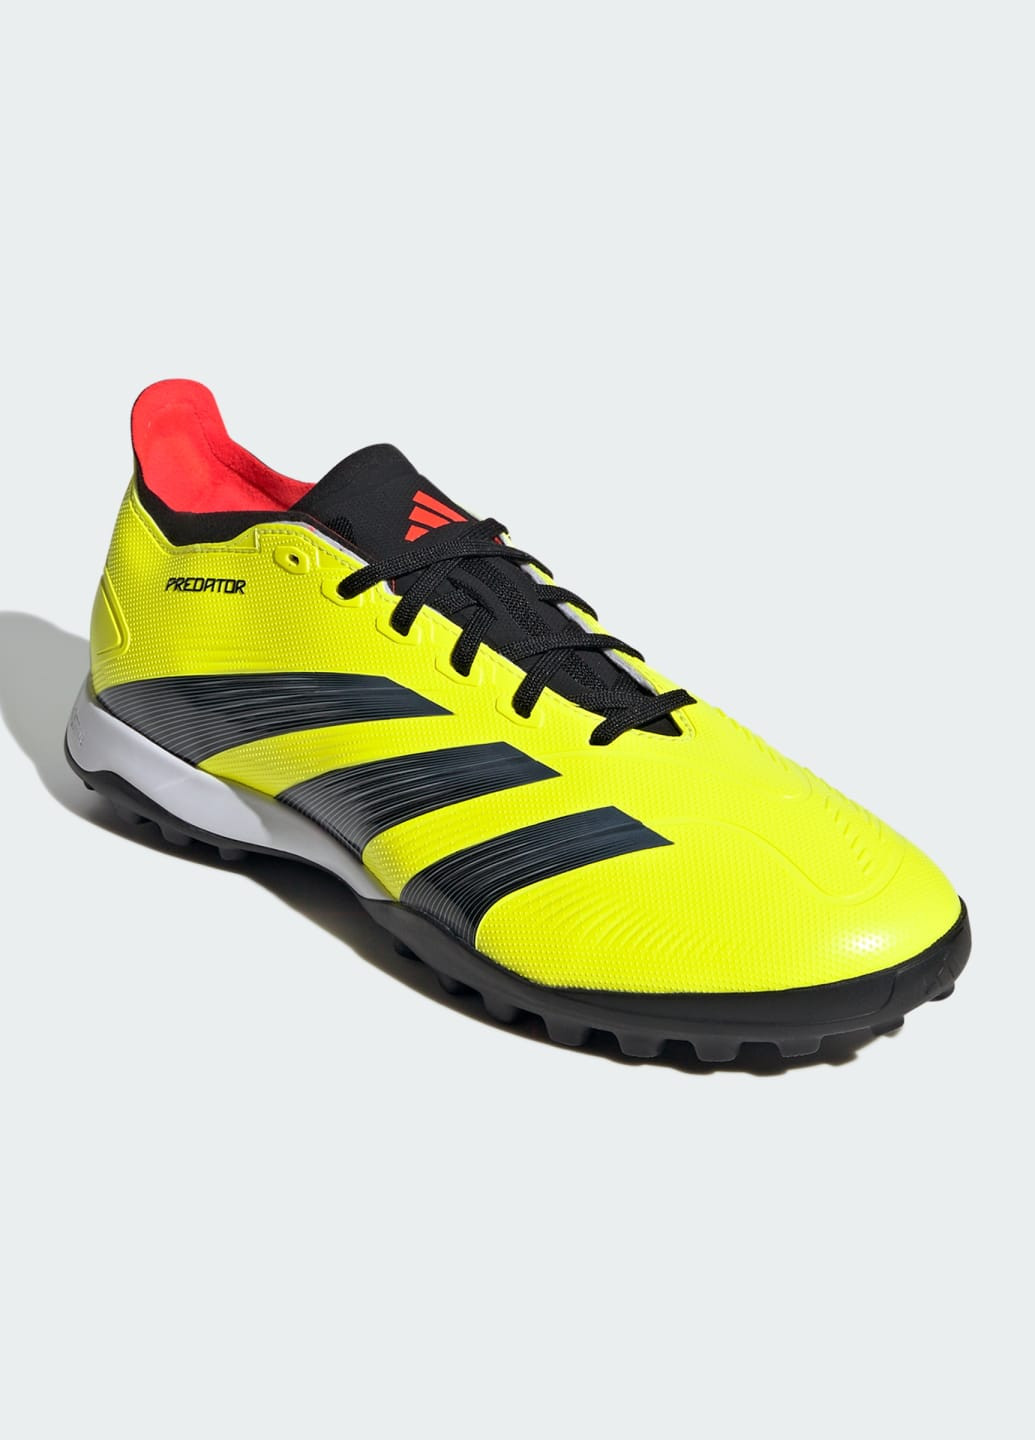 Желтые всесезонные футбольные бутсы predator 24 league low turf adidas